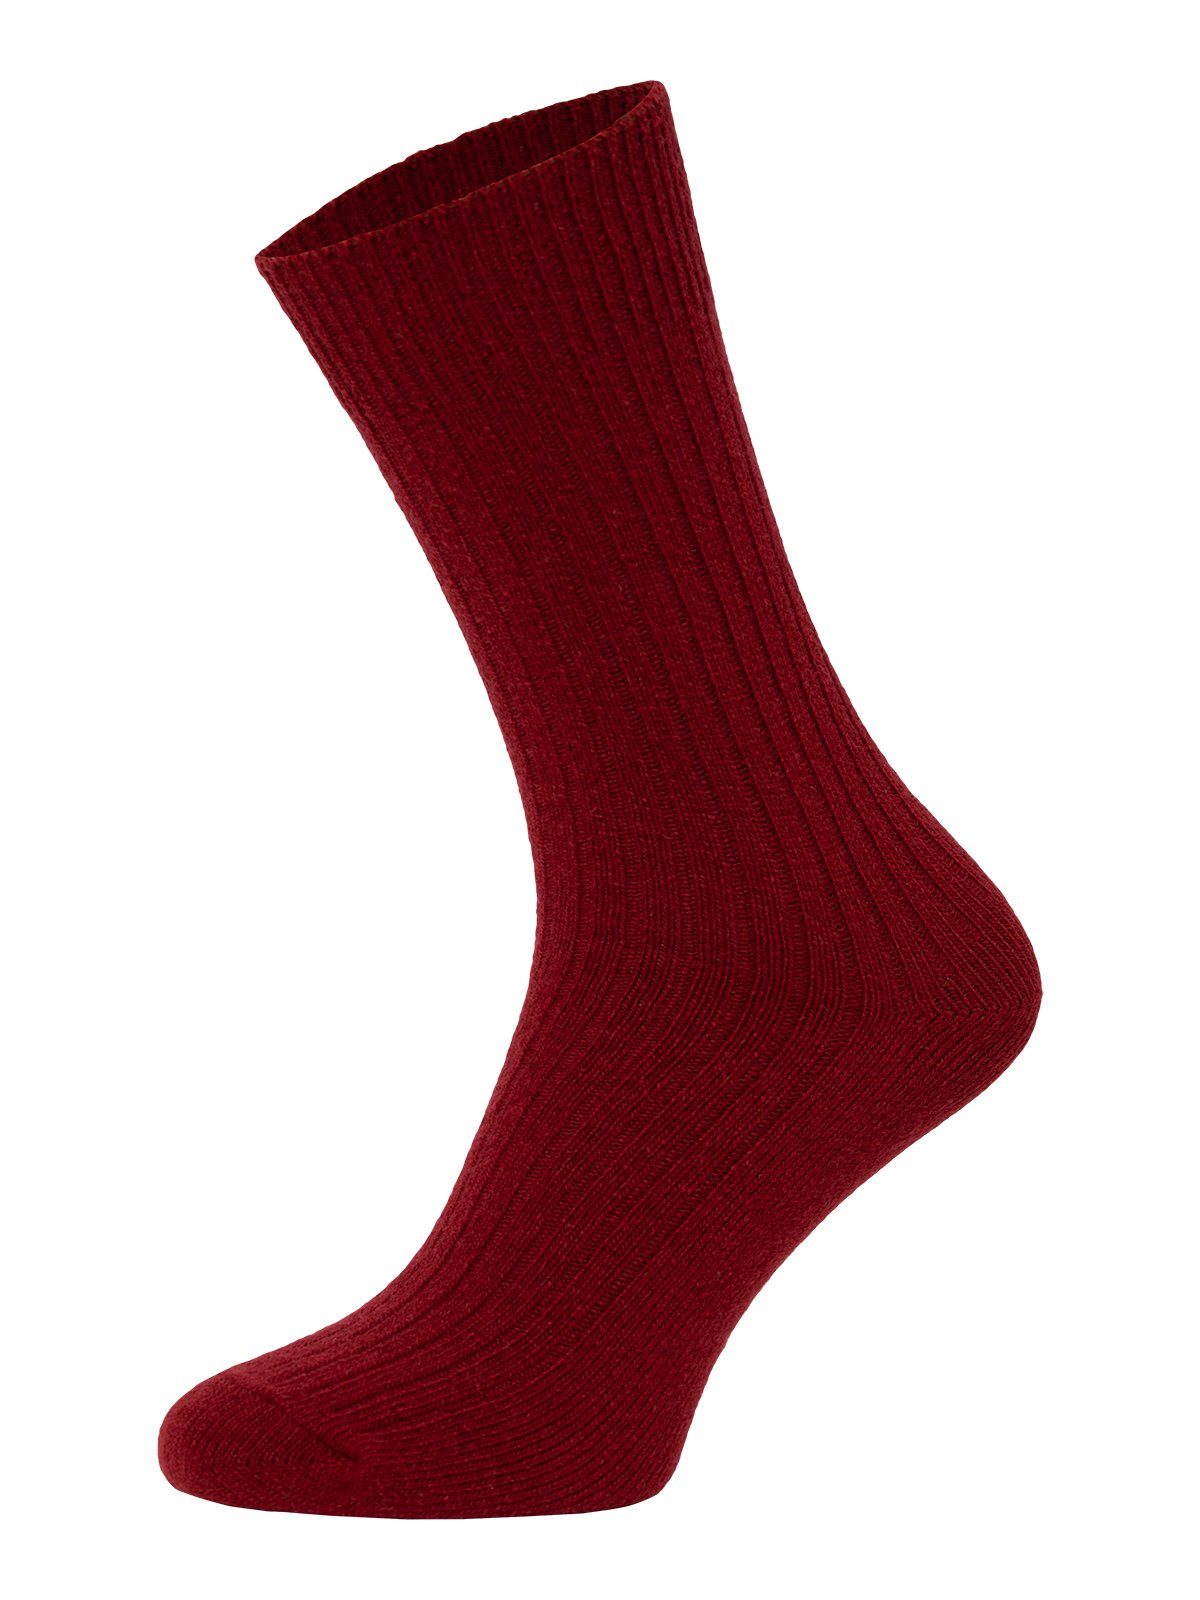 HomeOfSocks Socken Dünne Bunte Wollsocken mit 72% Wollanteil Hochwertige Uni Wollsocken Dünn Bunt Druckarm Weinrot